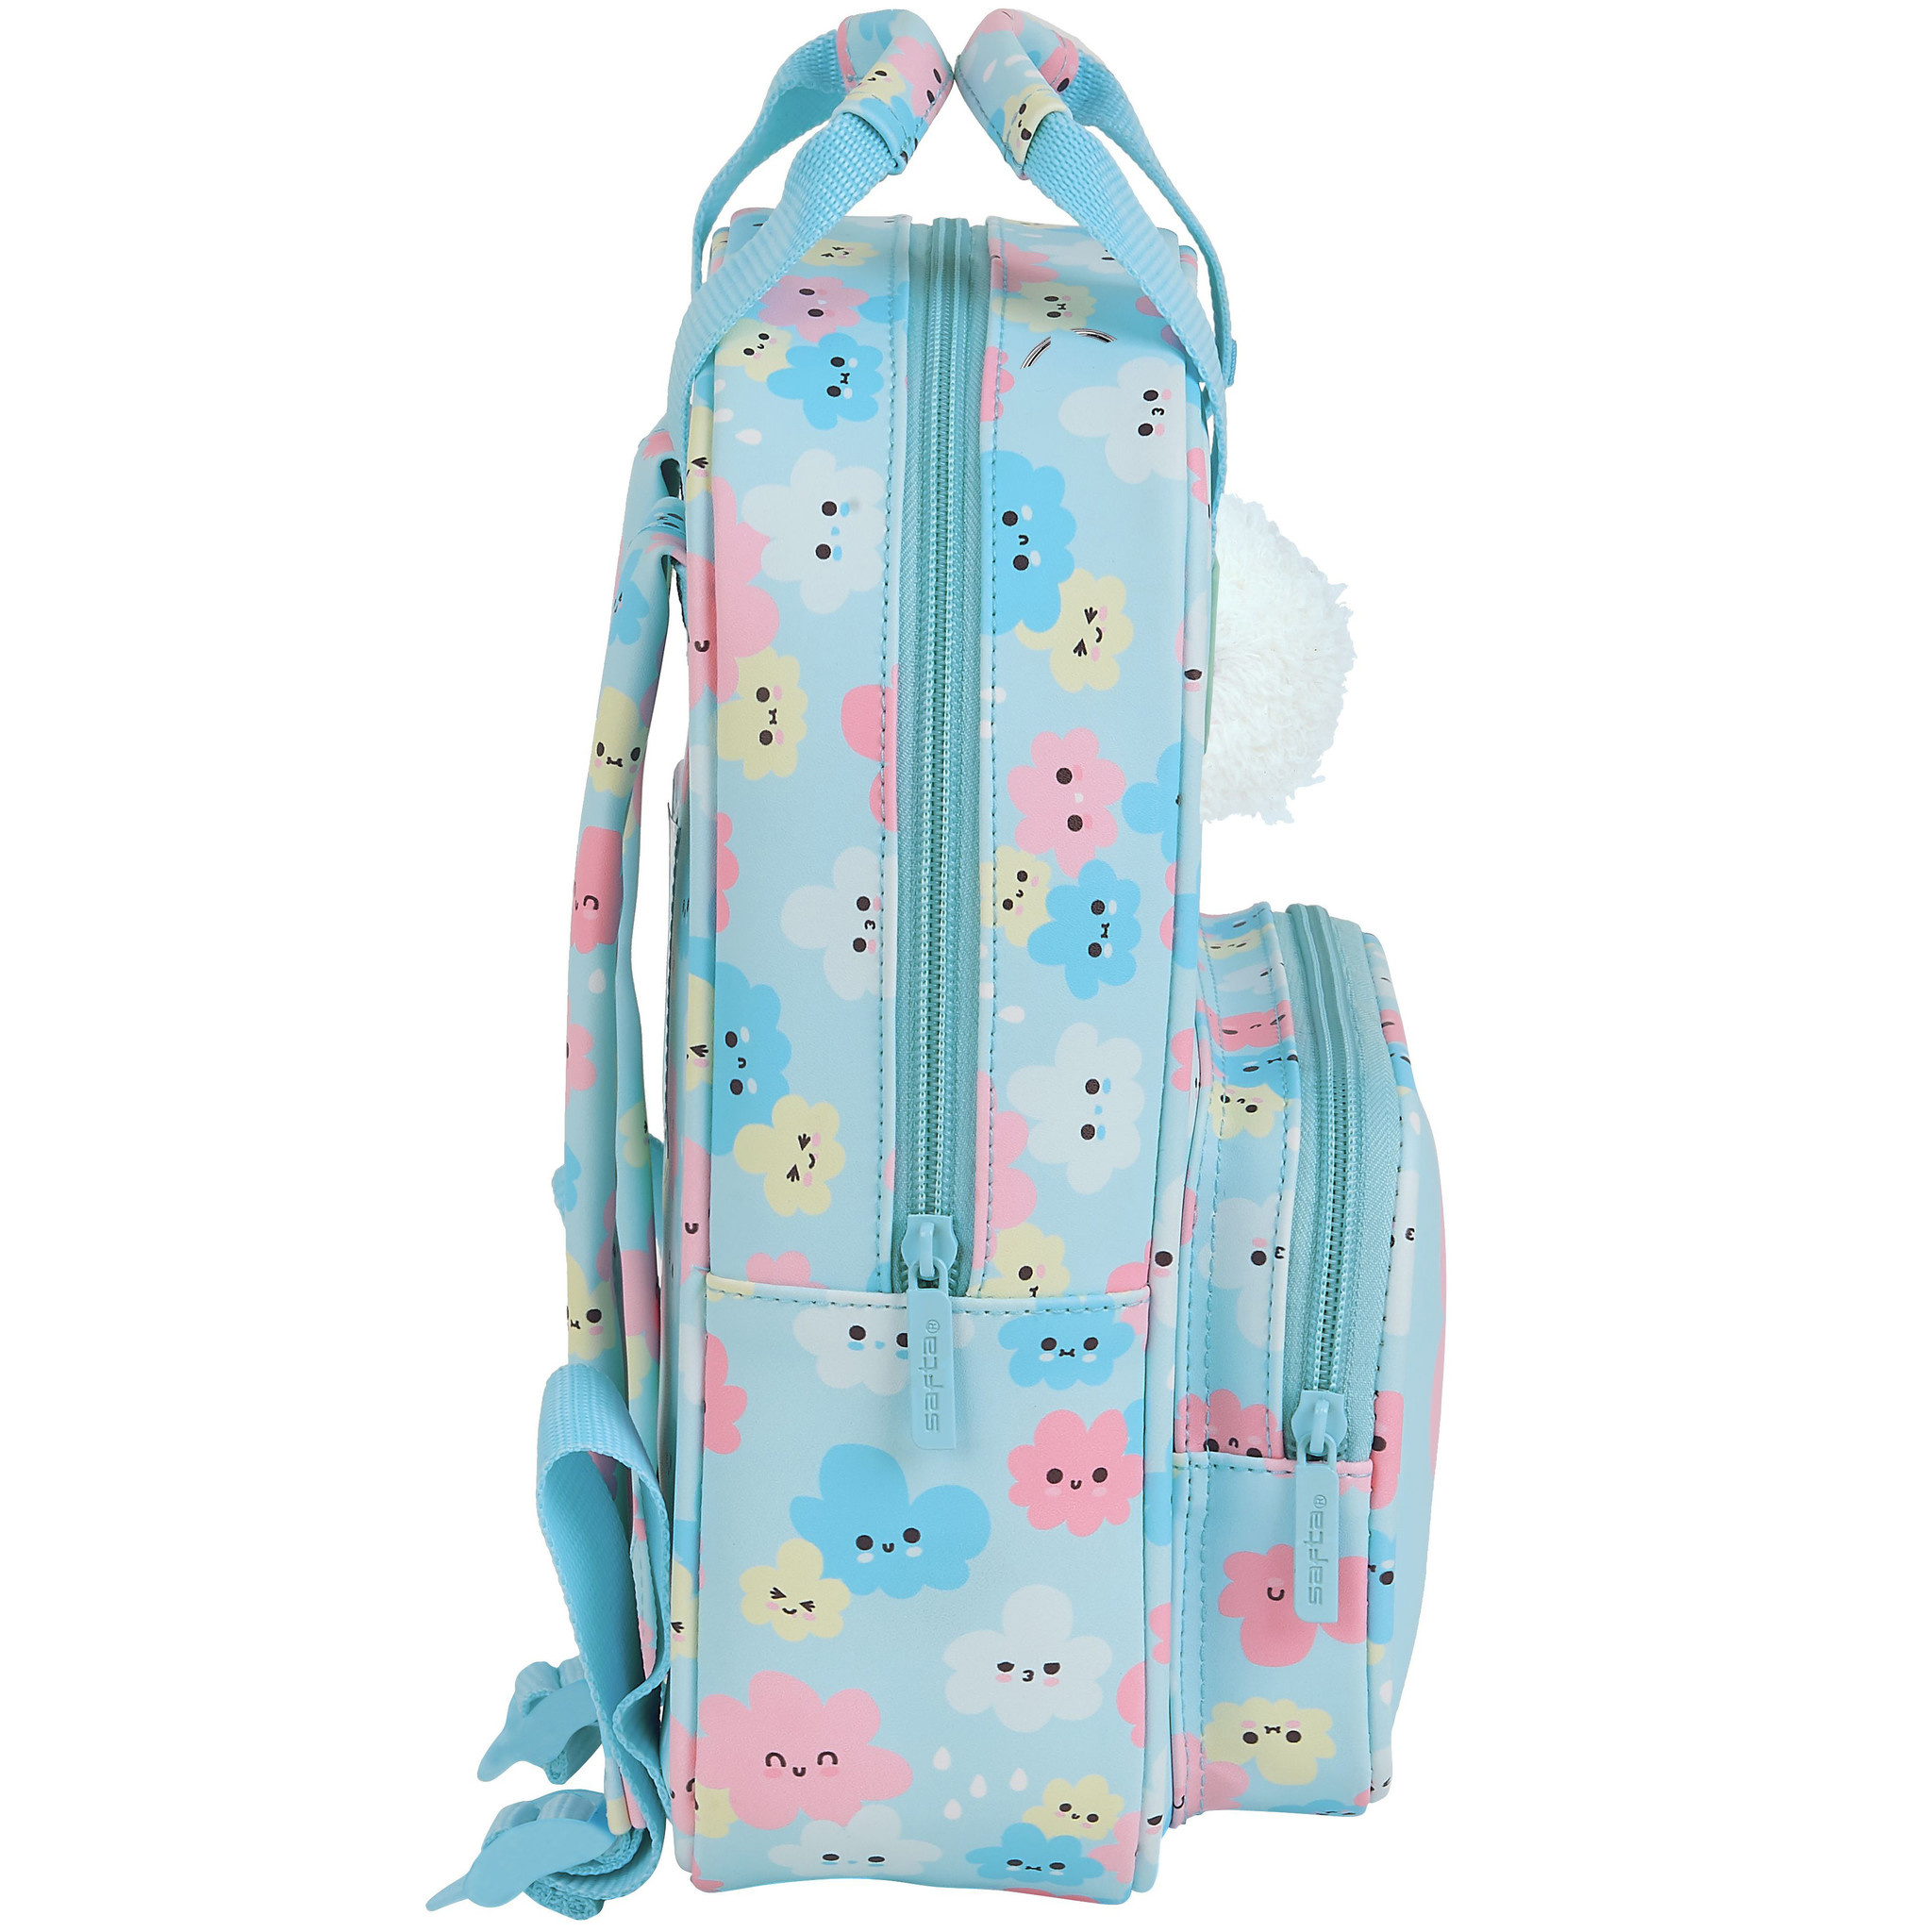 Safta Toddler Backpack Clouds - 28 x 20 x 8 cm - Blue